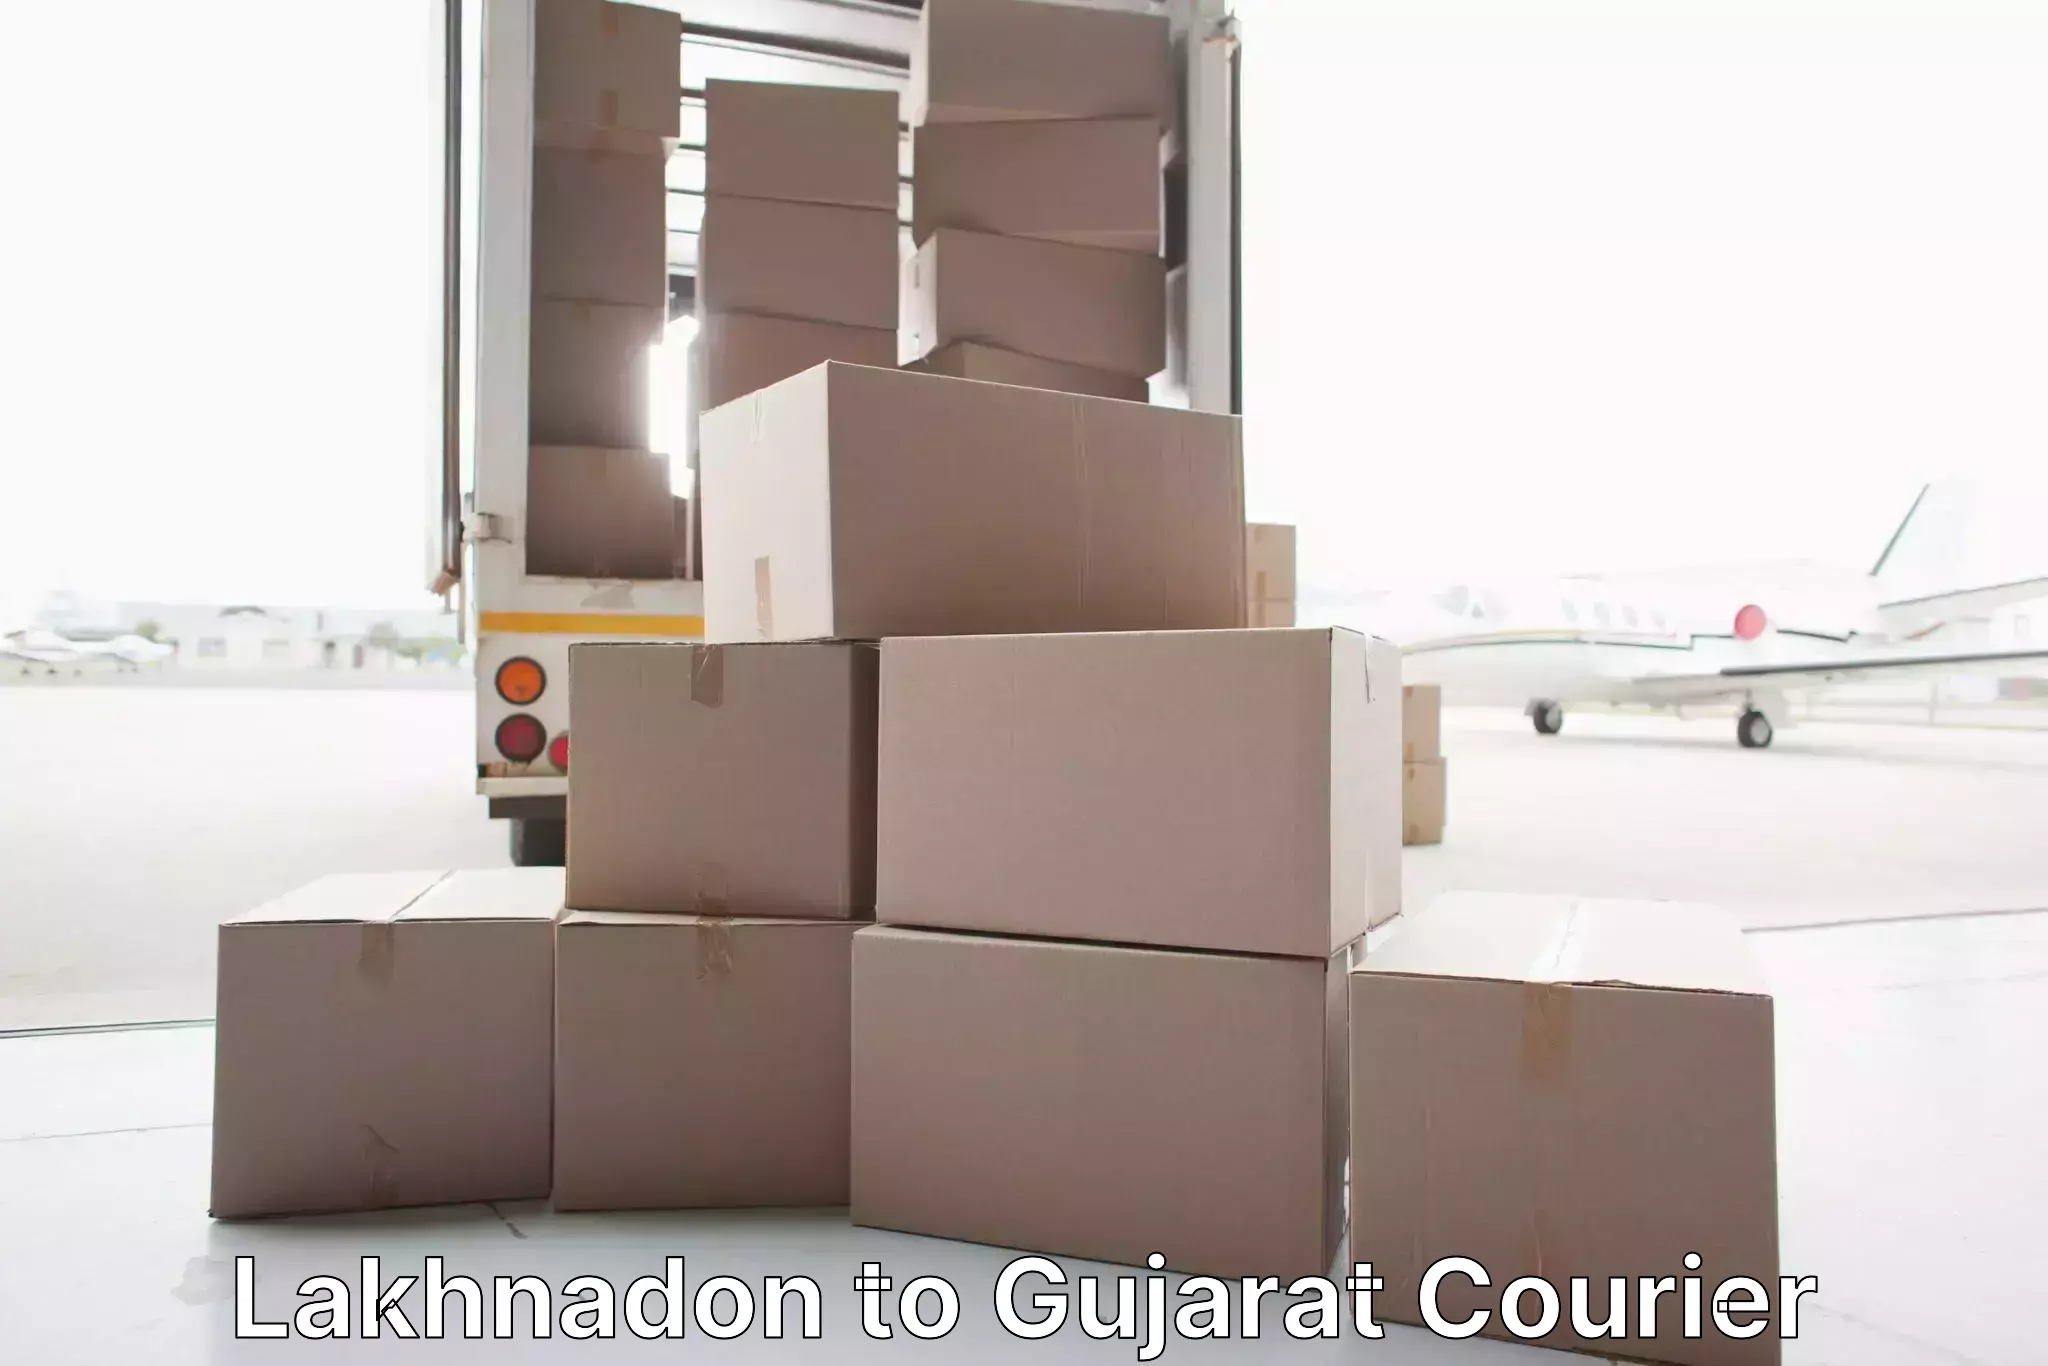 Premium moving services in Lakhnadon to Gujarat